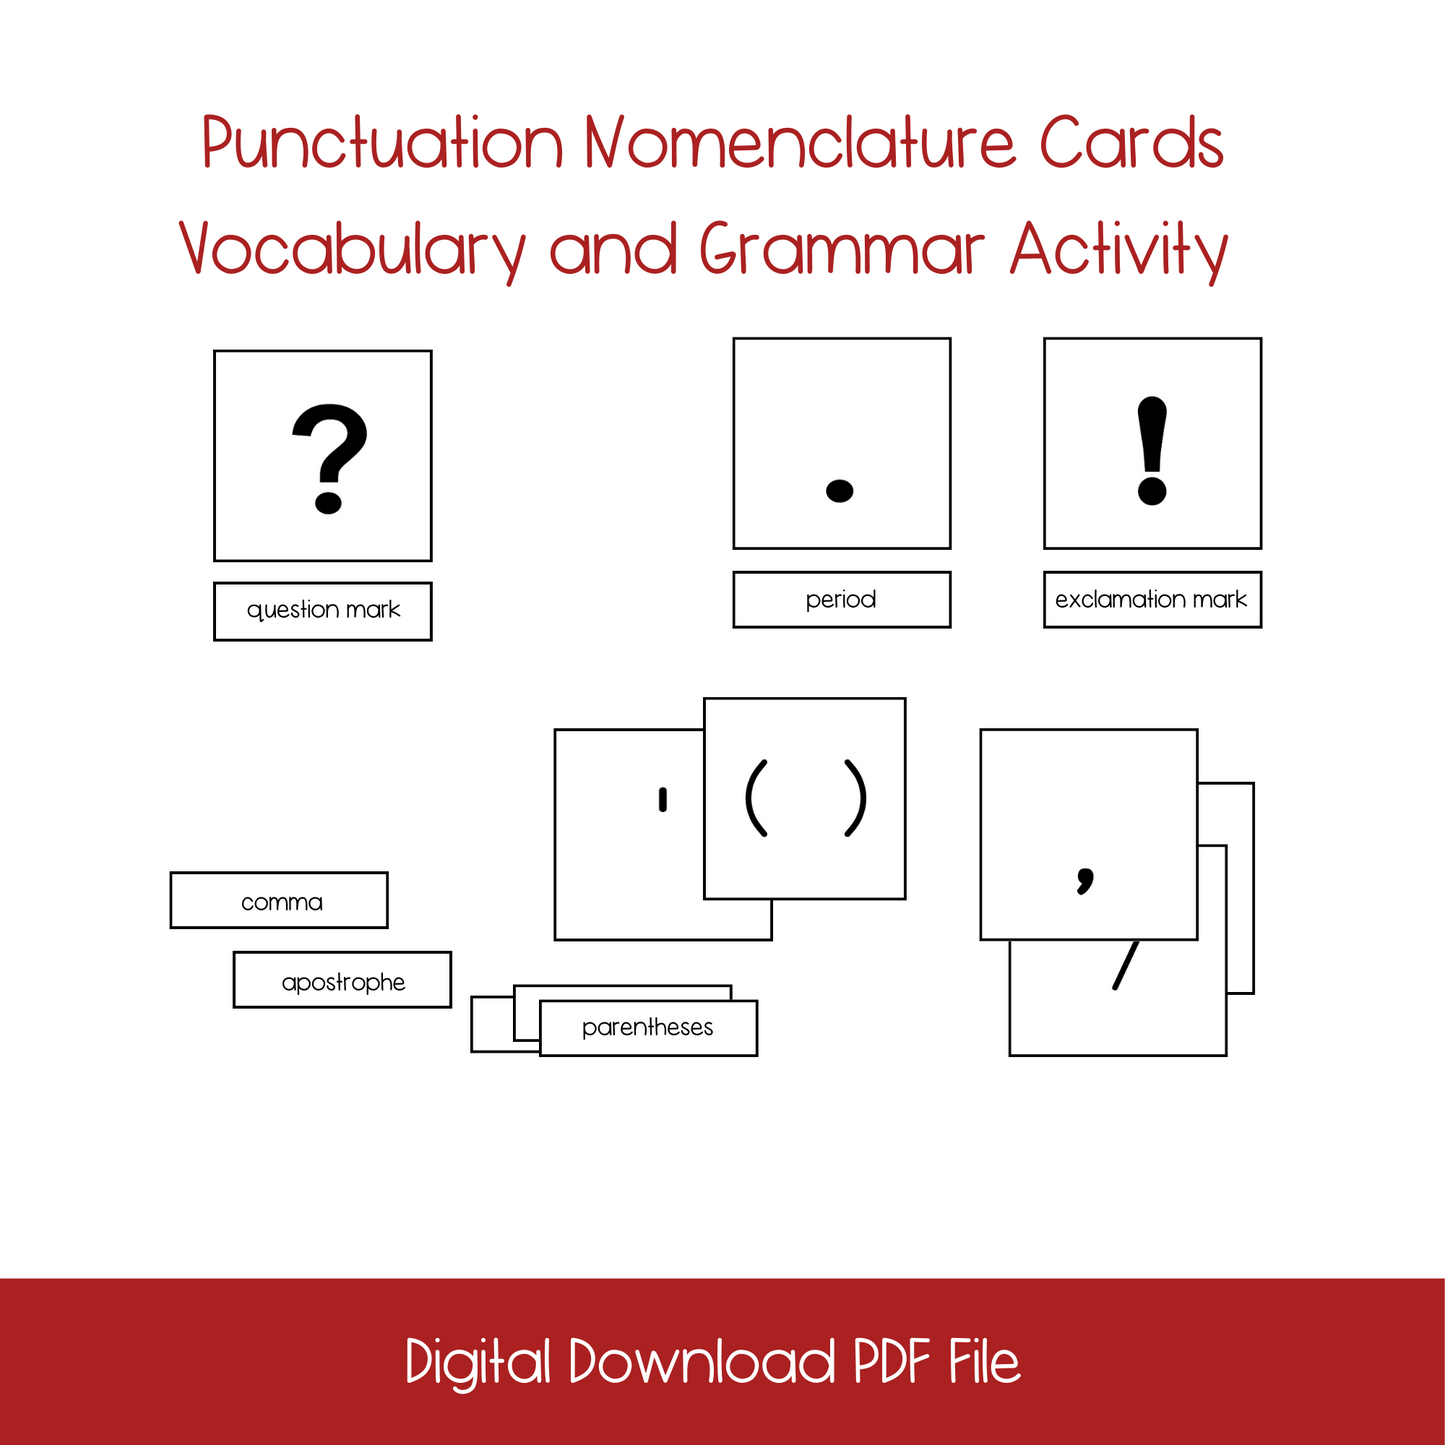 Punctuation Nomenclature Cards Grammar Activity (PDF Downlaod)